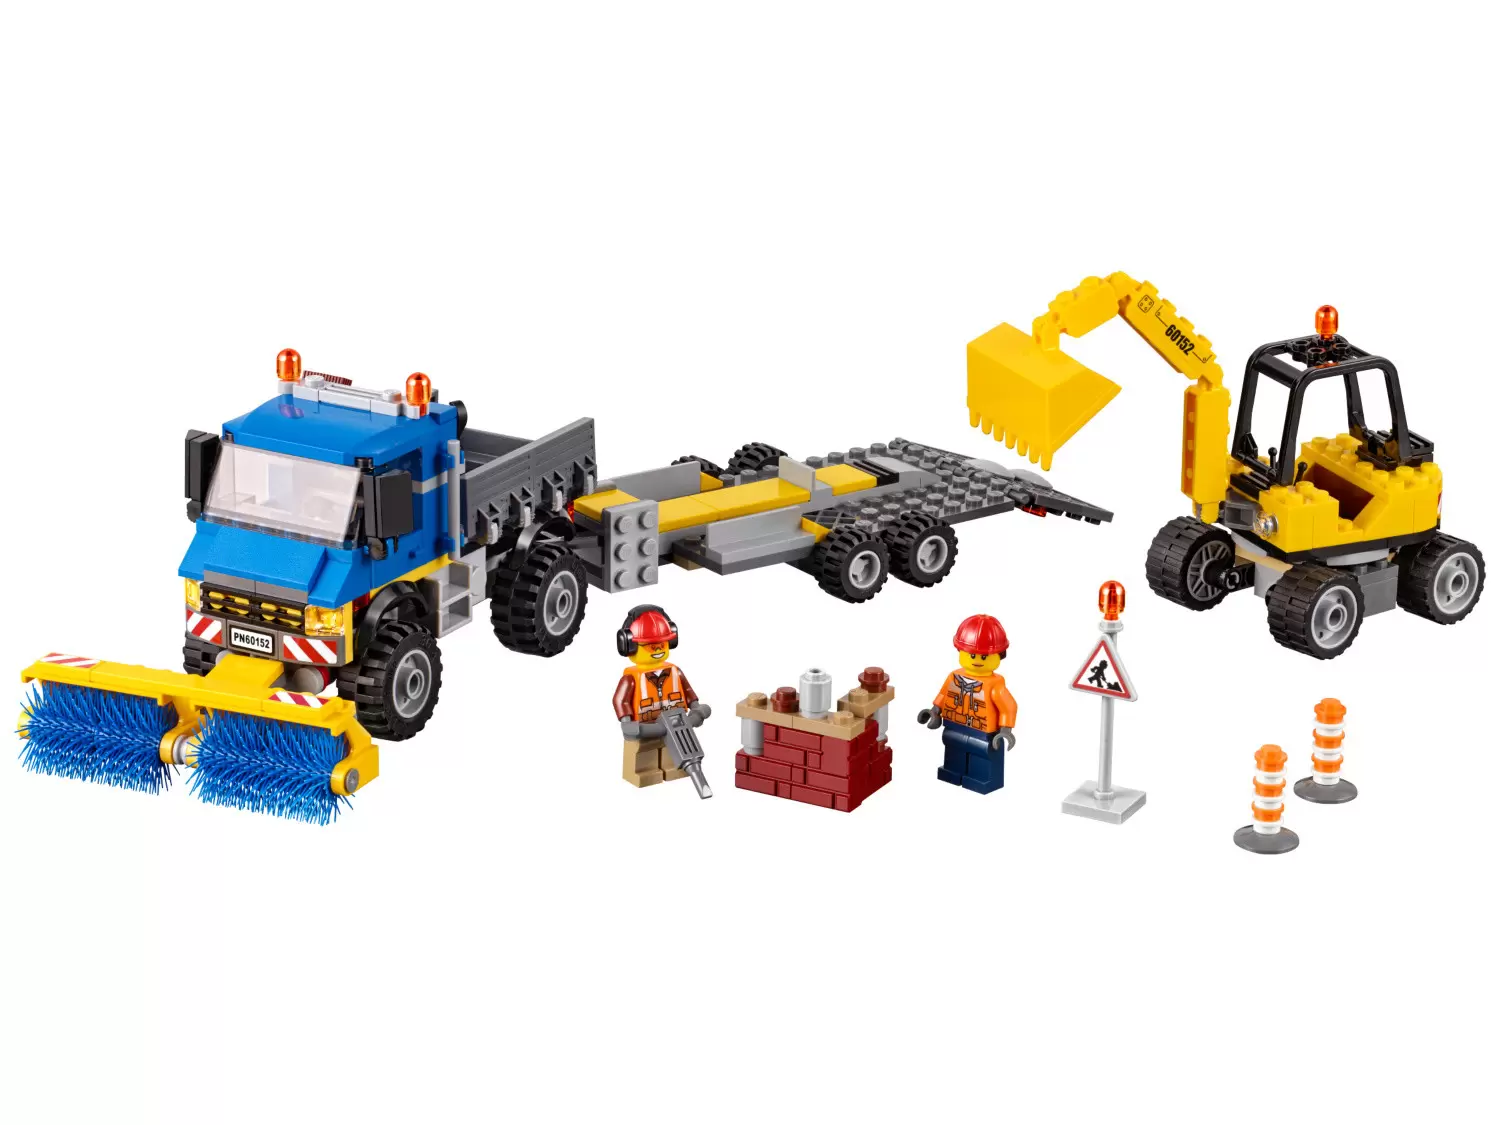 LEGO CITY - Sweeper & Excavator